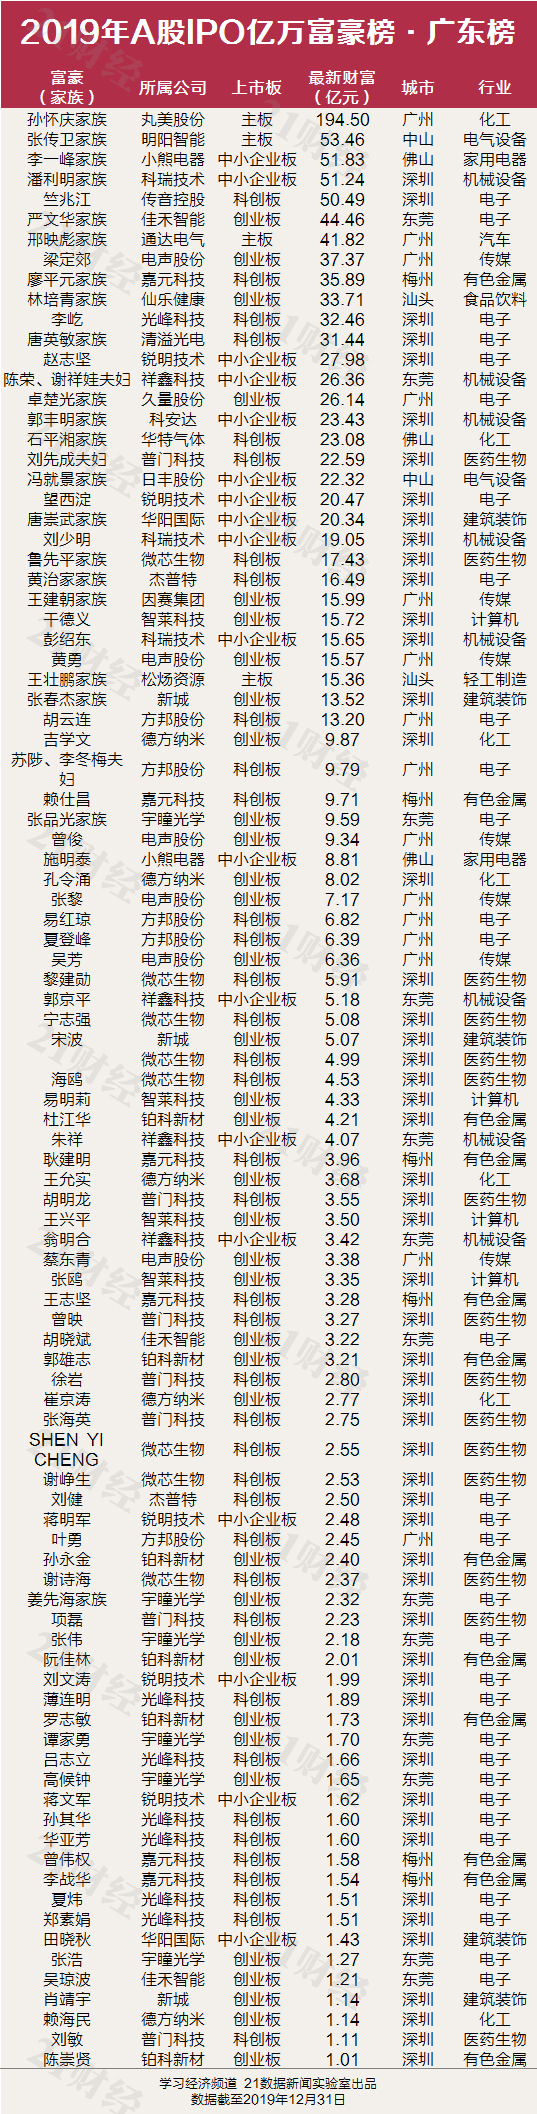 广东34家排名第一 催生了96位亿万富豪